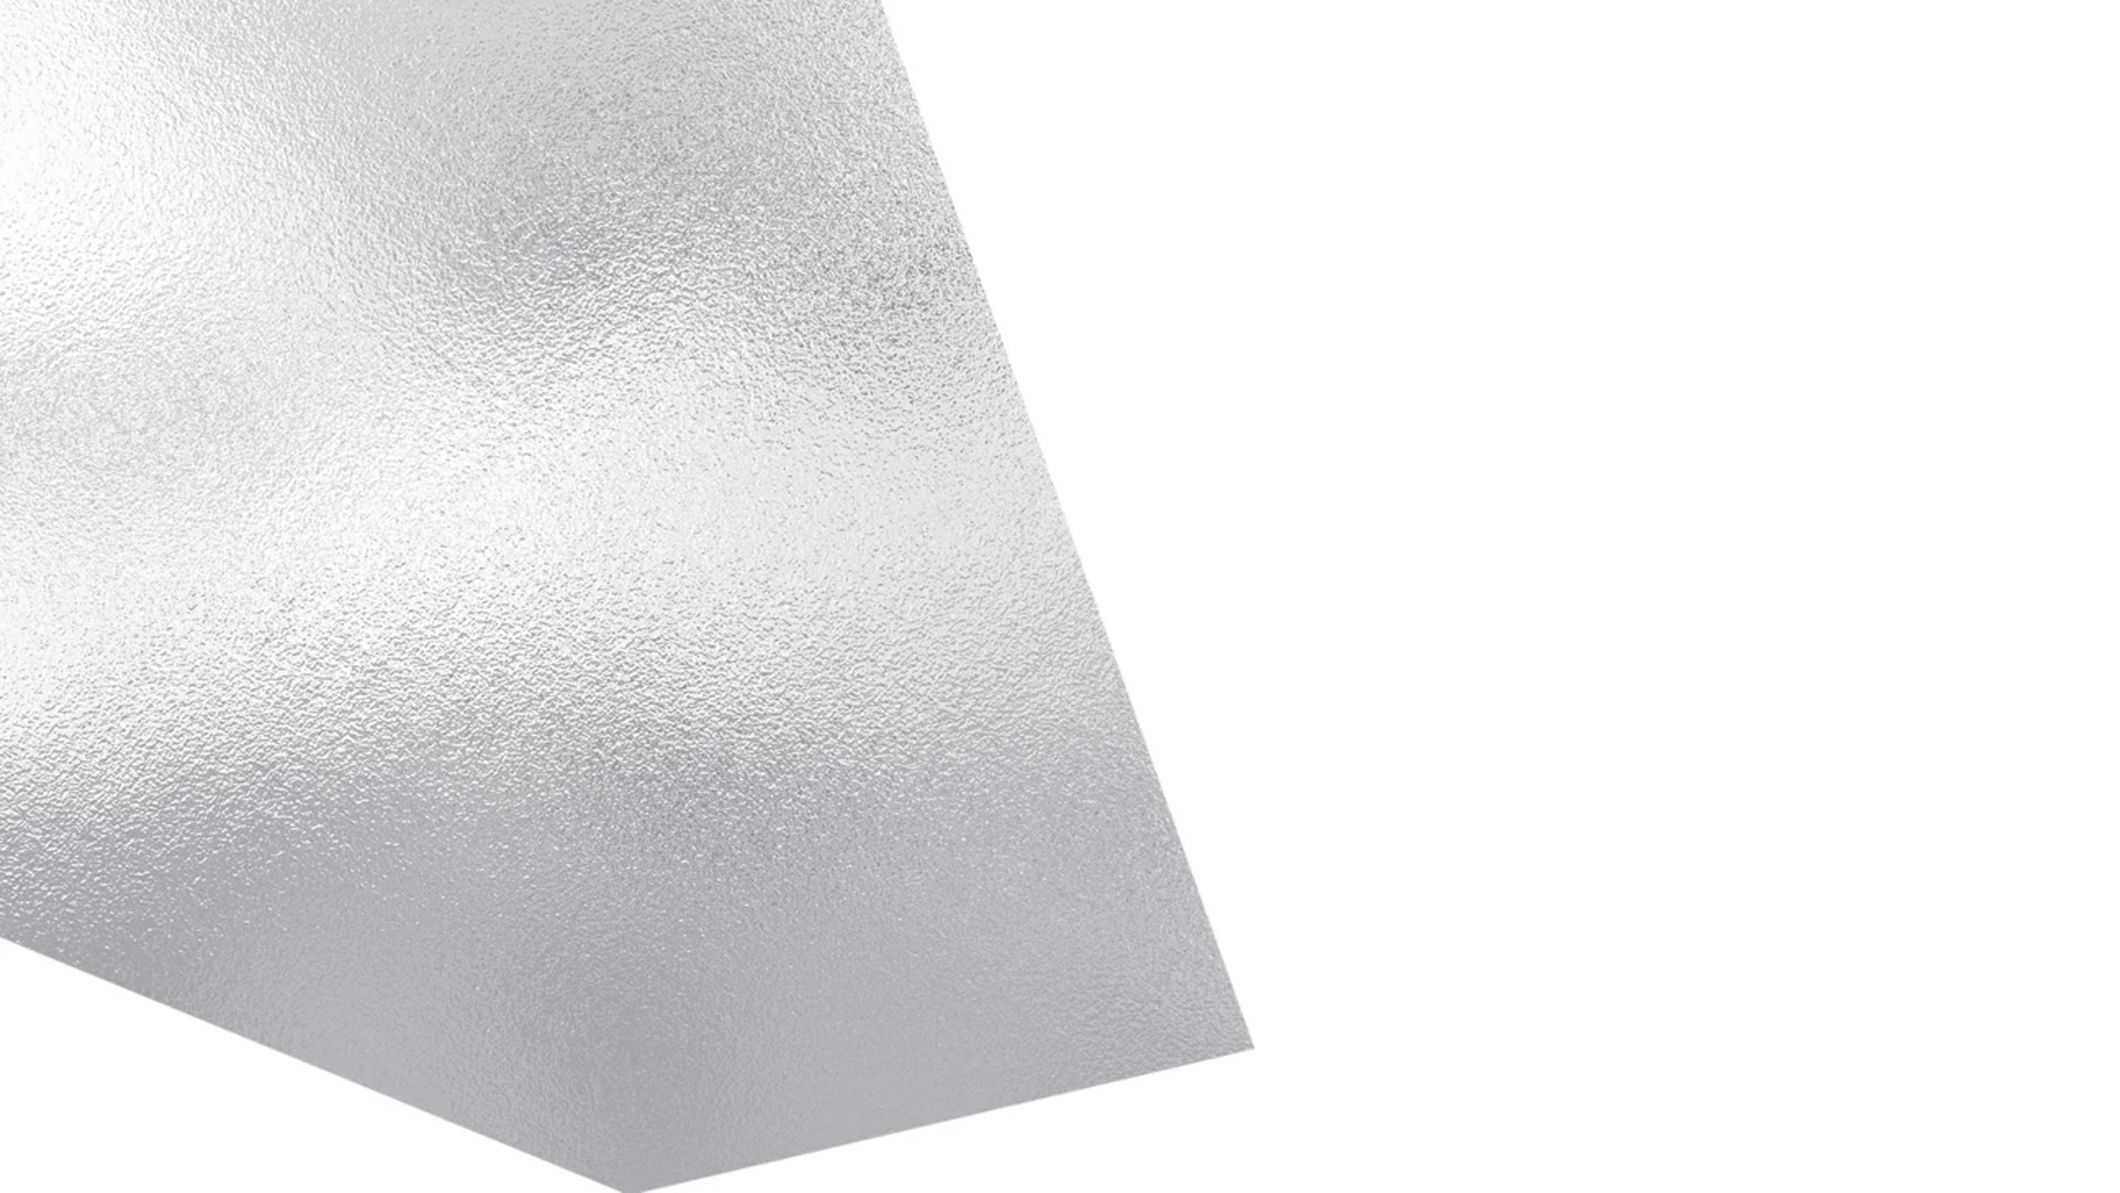 Metall Aluminium AlSi10Mg für den industriellen 3D-Druck